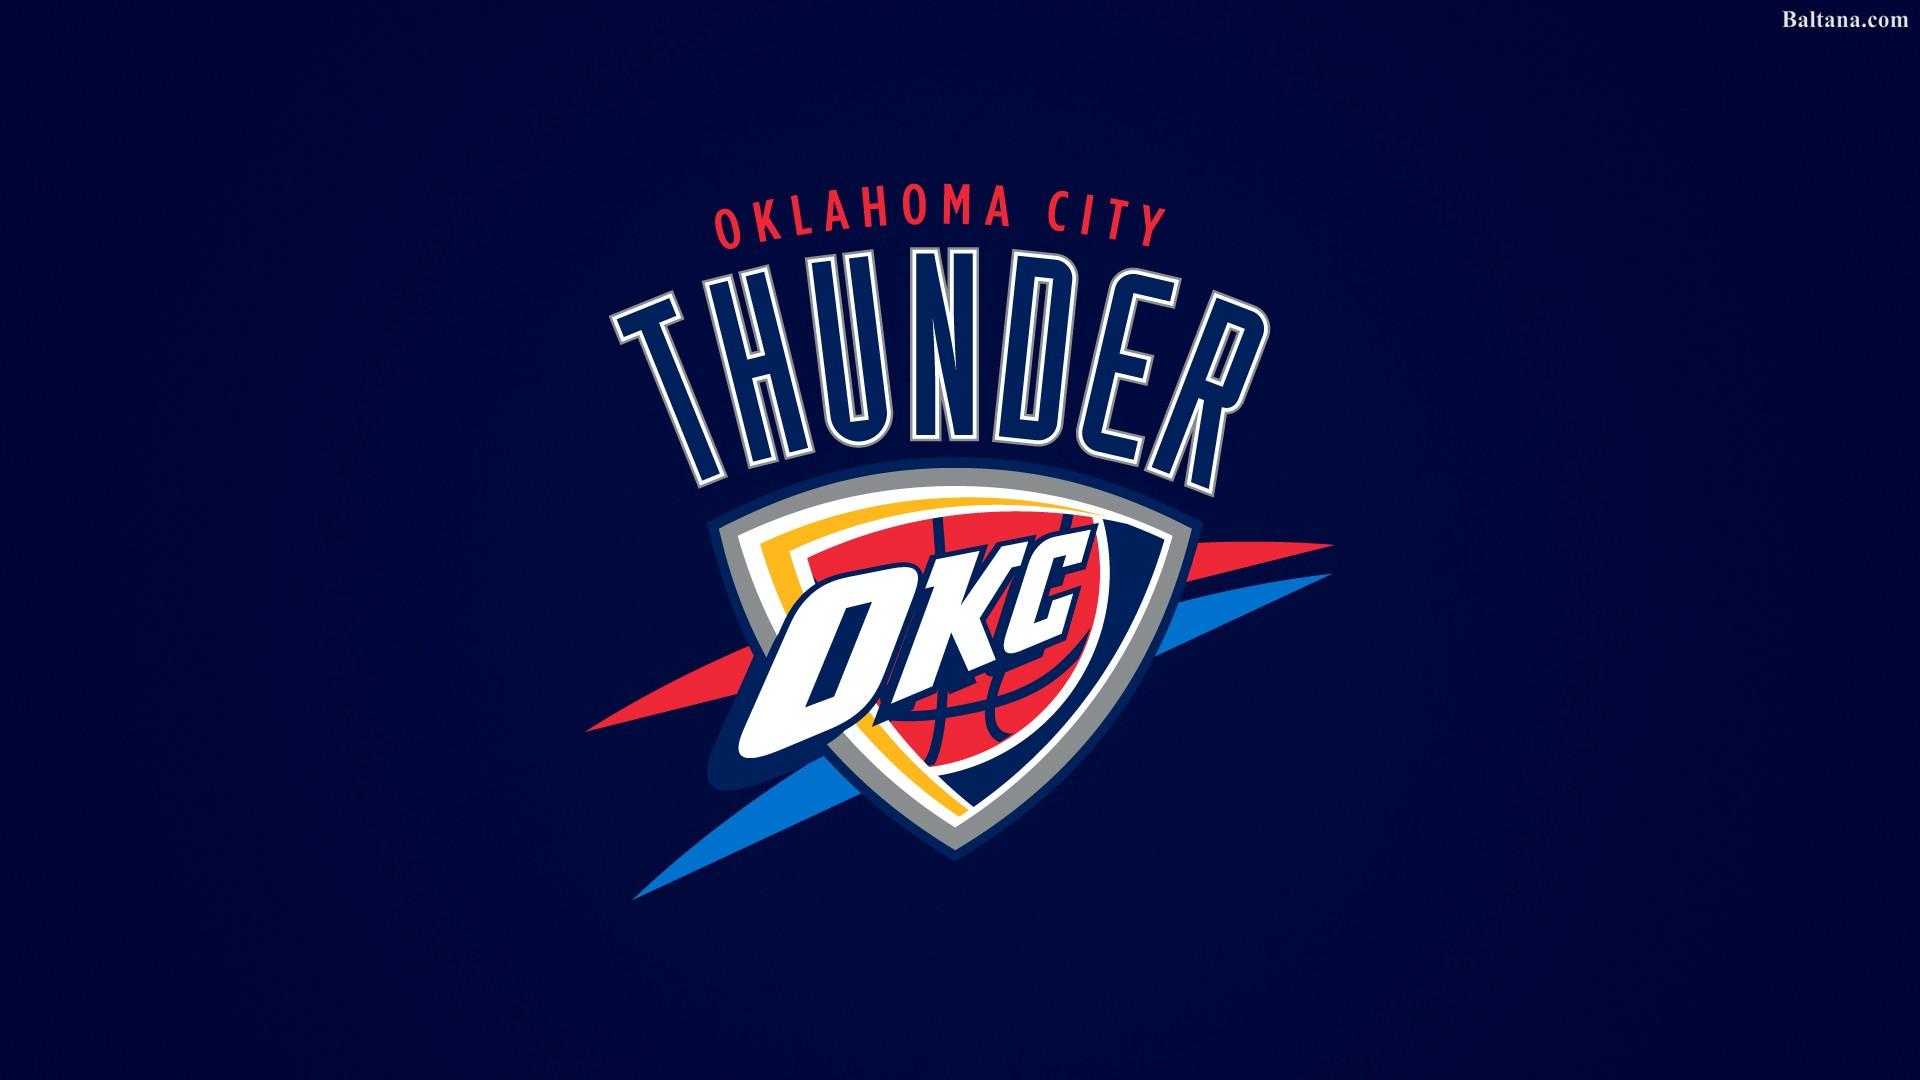 Oklahoma City Thunder 2019 Wallpapers